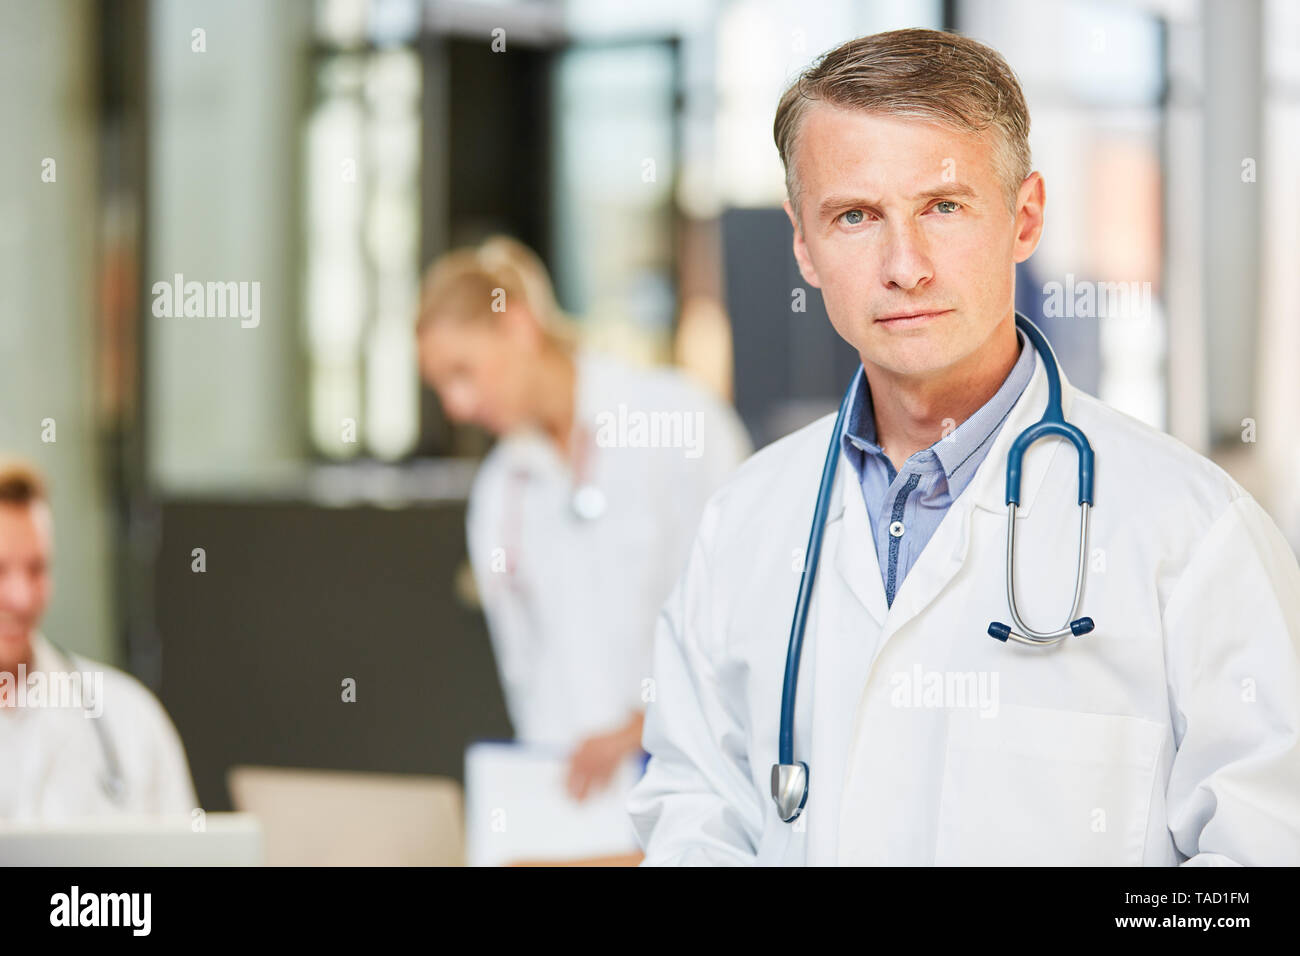 Der Mensch als Oberarzt mit Kompetenz und Verantwortung in einer Klinik oder Krankenhaus. Stockfoto